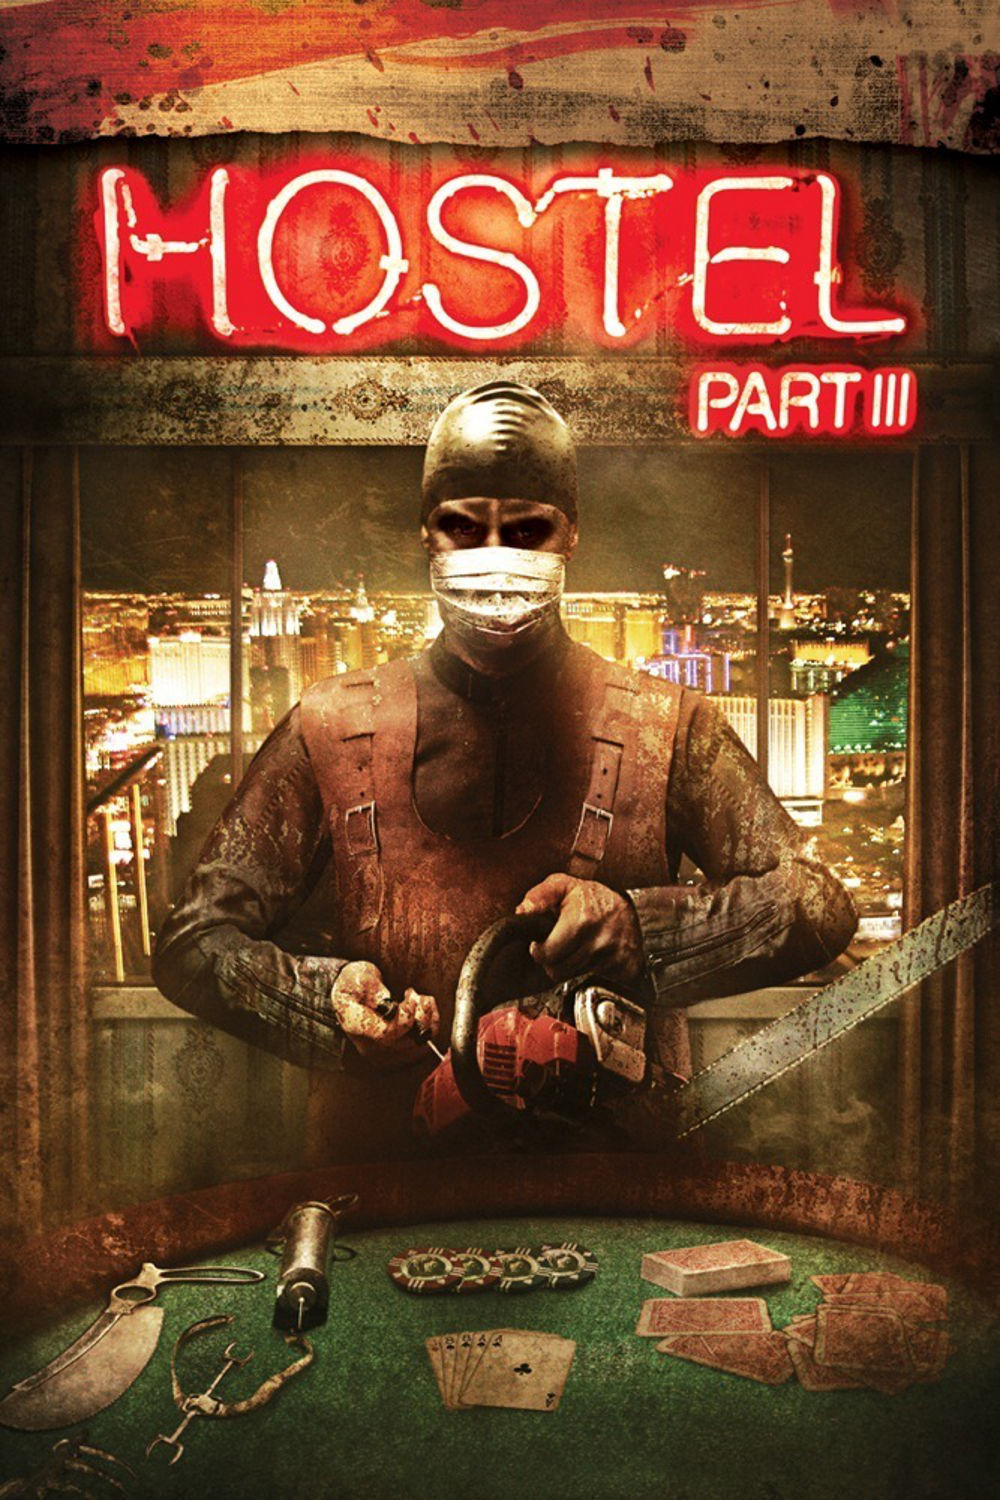 Хостел 3 - Hostel: Part III